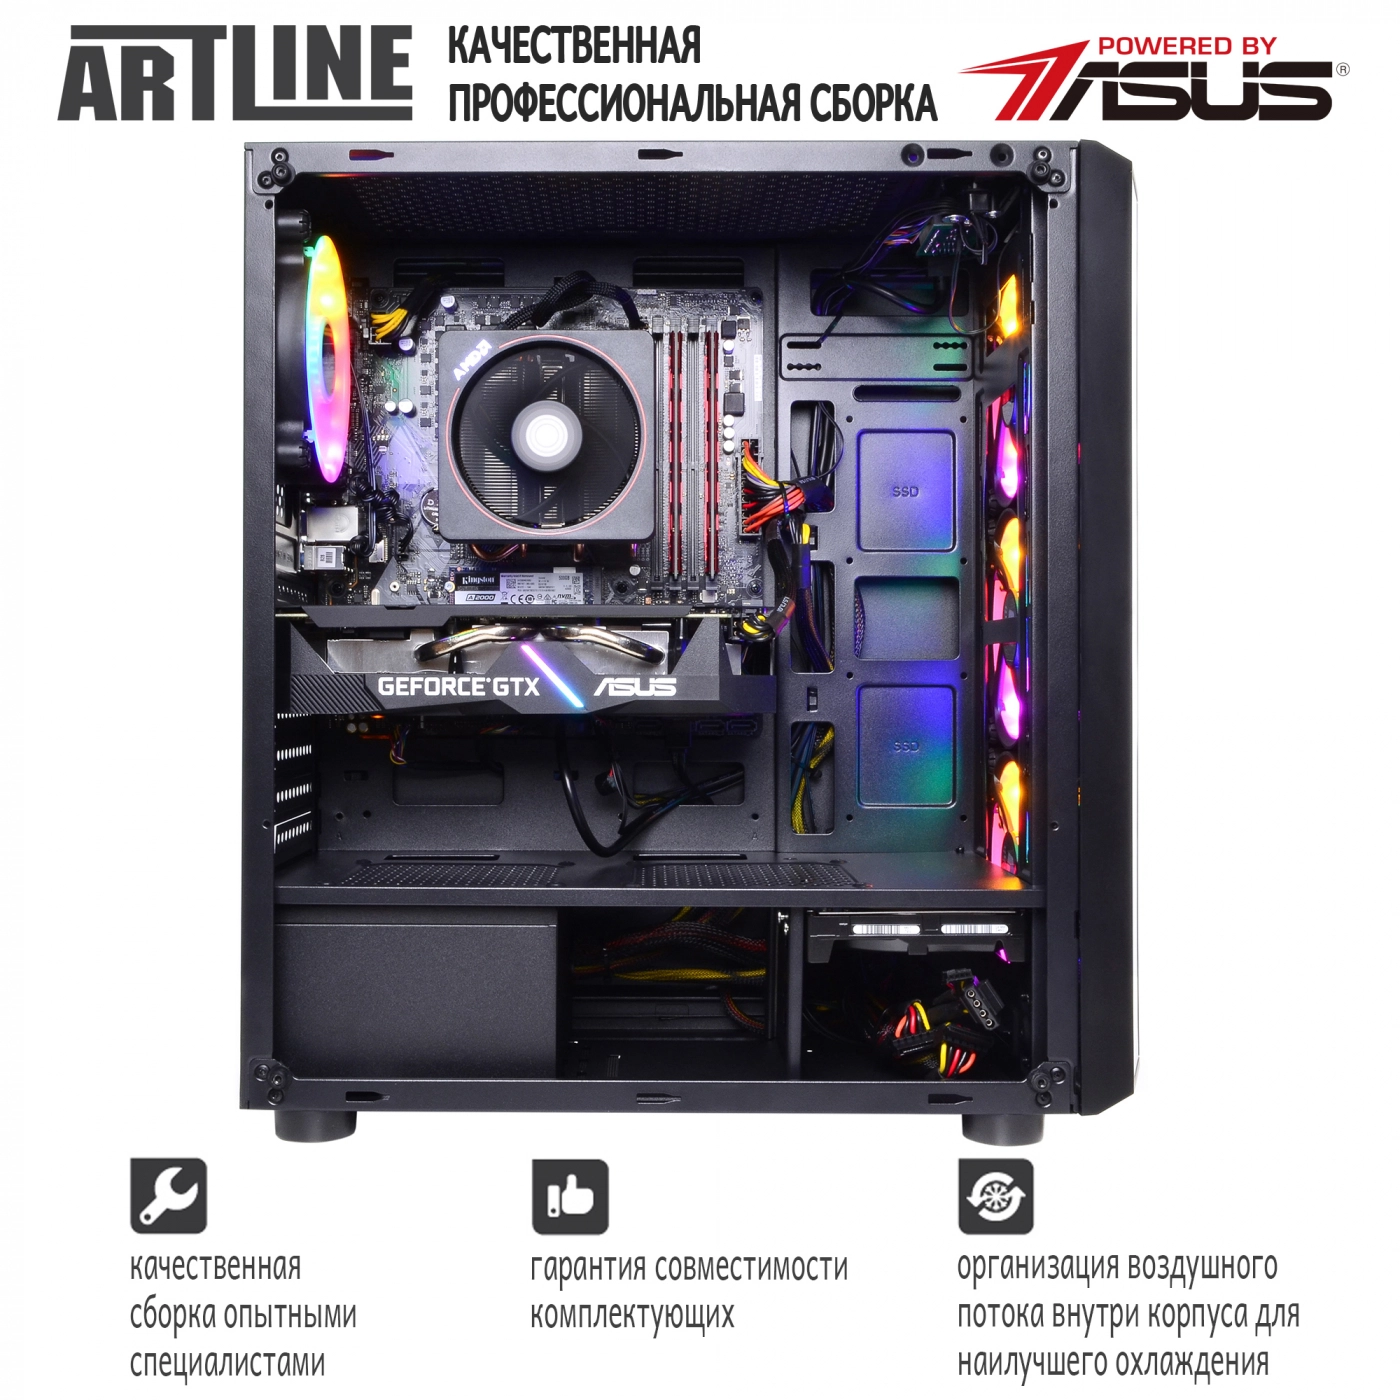 Купить Компьютер ARTLINE Gaming X63v11 - фото 8